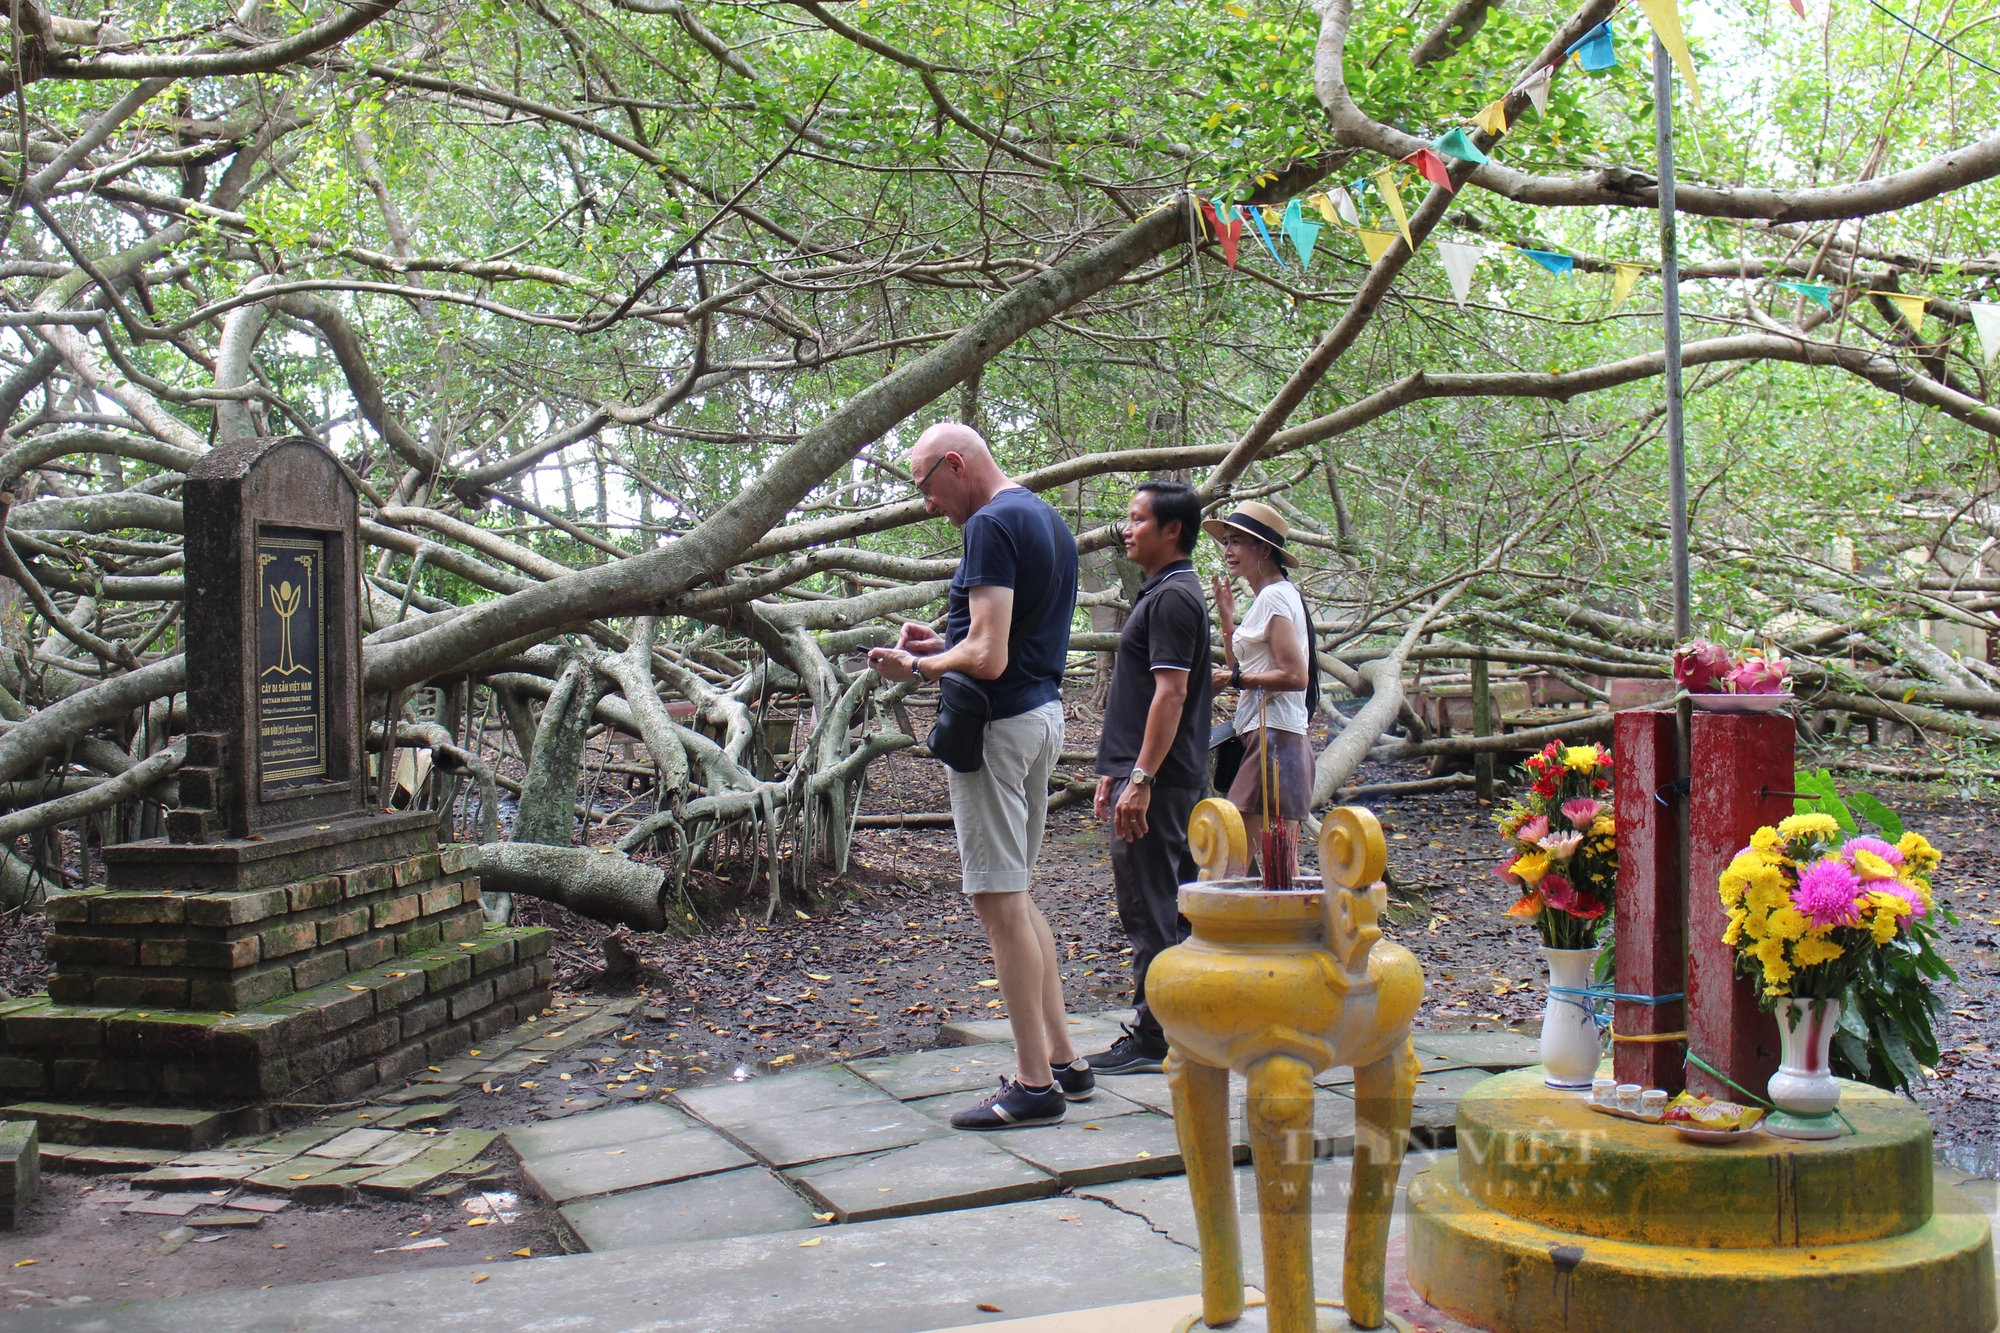 Choáng ngợp với cây Giàn Gừa hơn 200 năm tuổi, được công nhận là cây di sản Việt Nam - Ảnh 6.